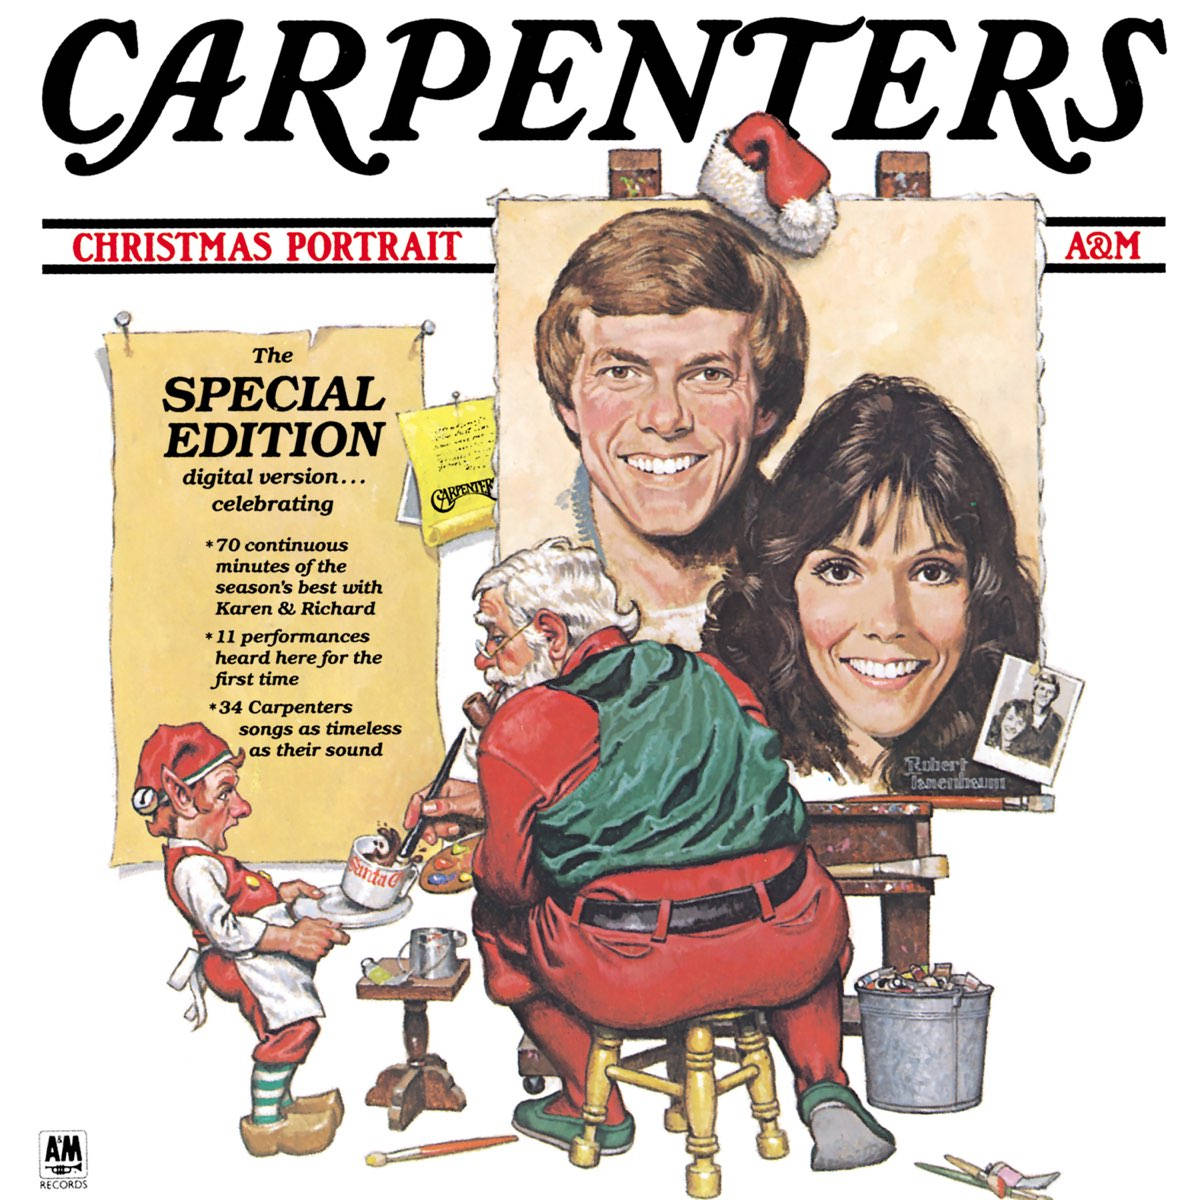 The Carpenters Christmas Portrait Album Art 1978 Wallpaper